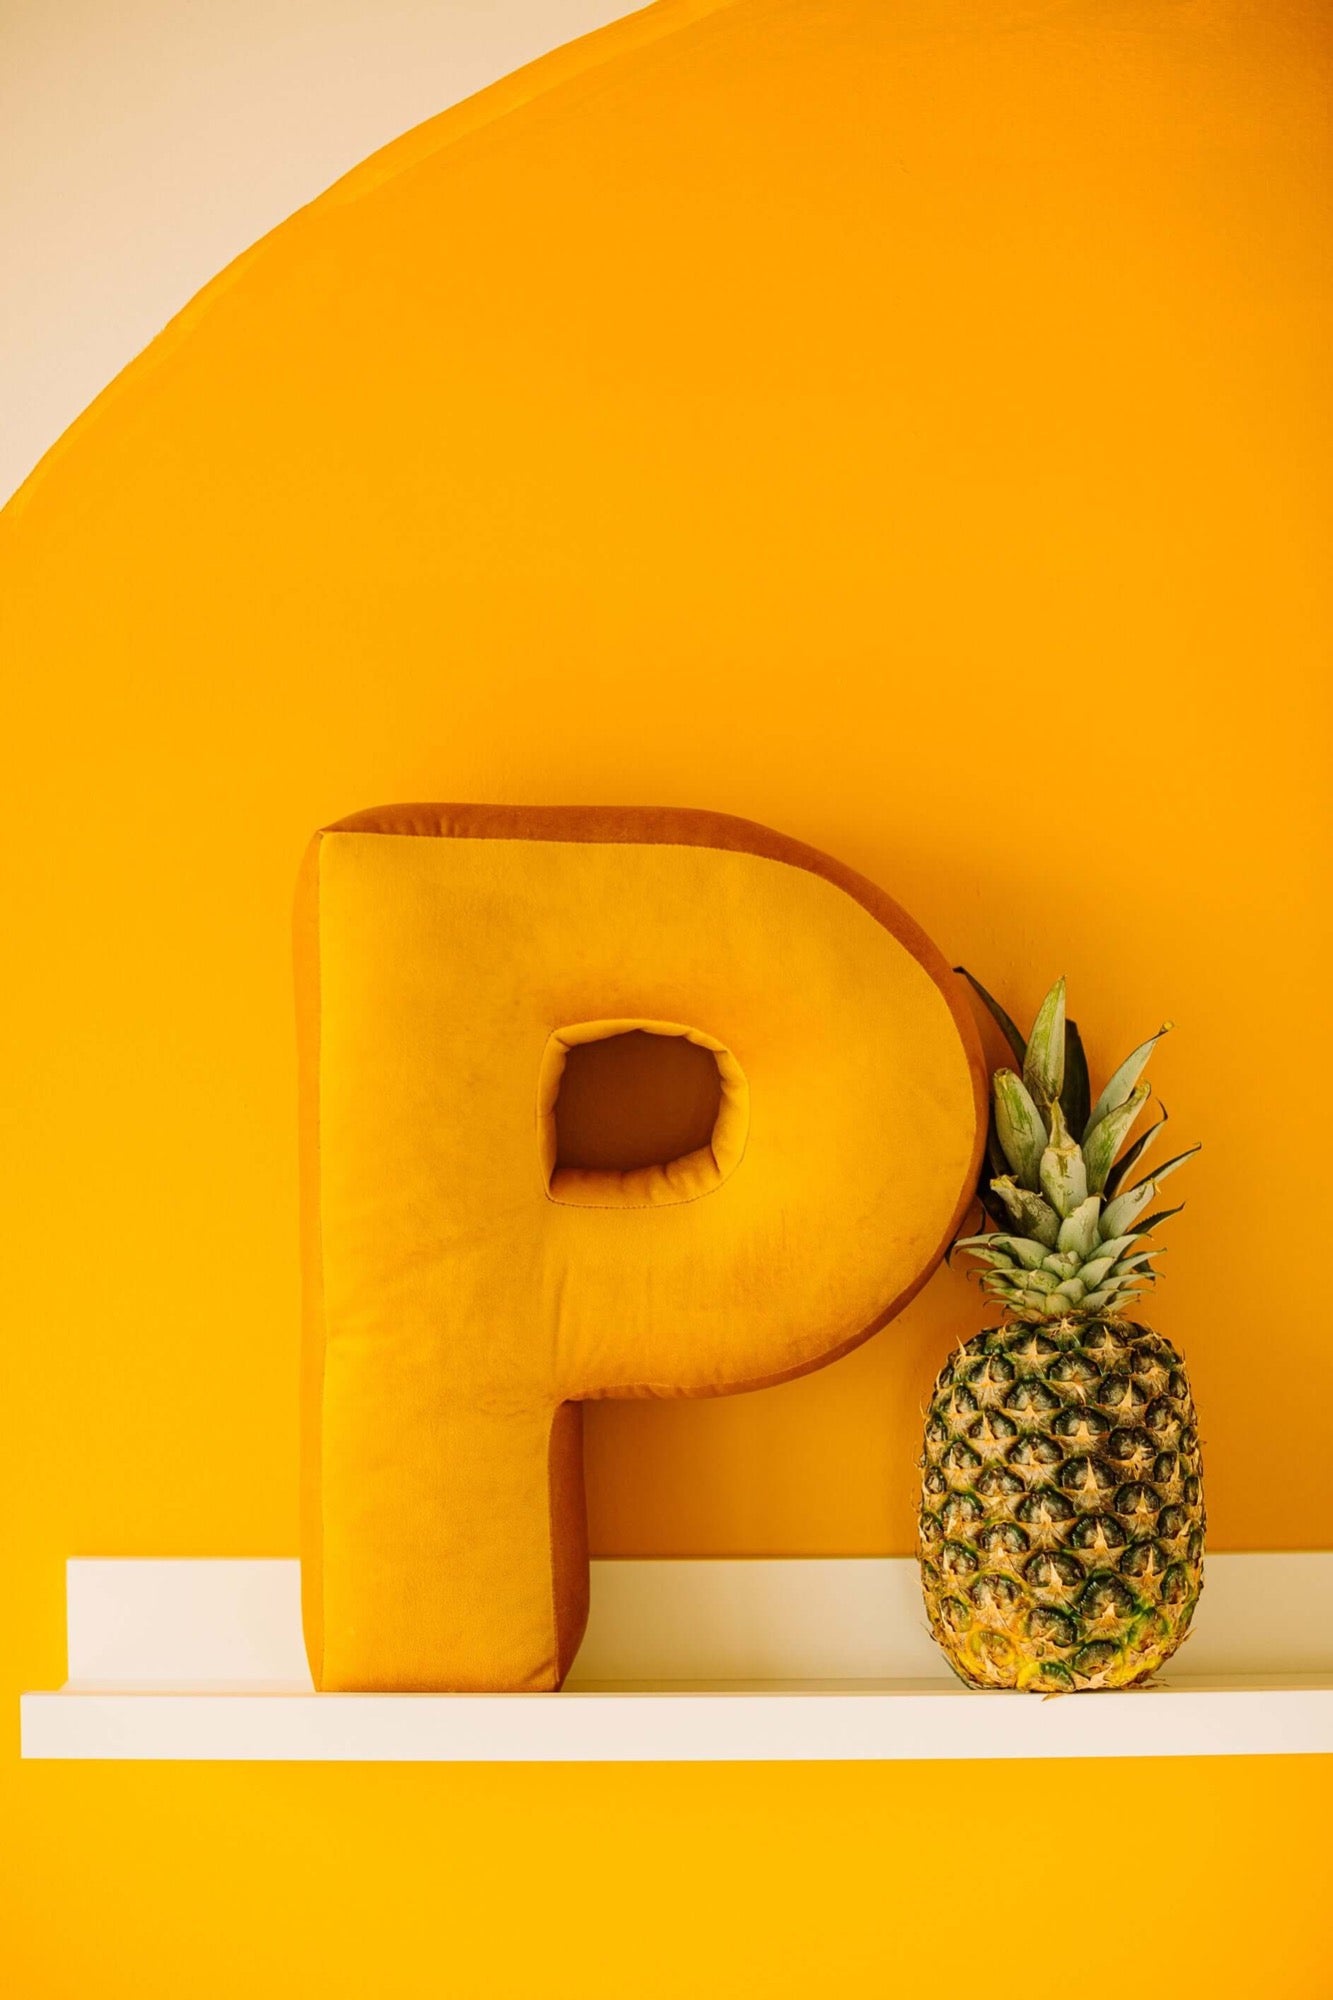 Poduszka literka welurowa P żółta od Bettys Home stojąca na tle żółtej ściany na półce obok ananasa